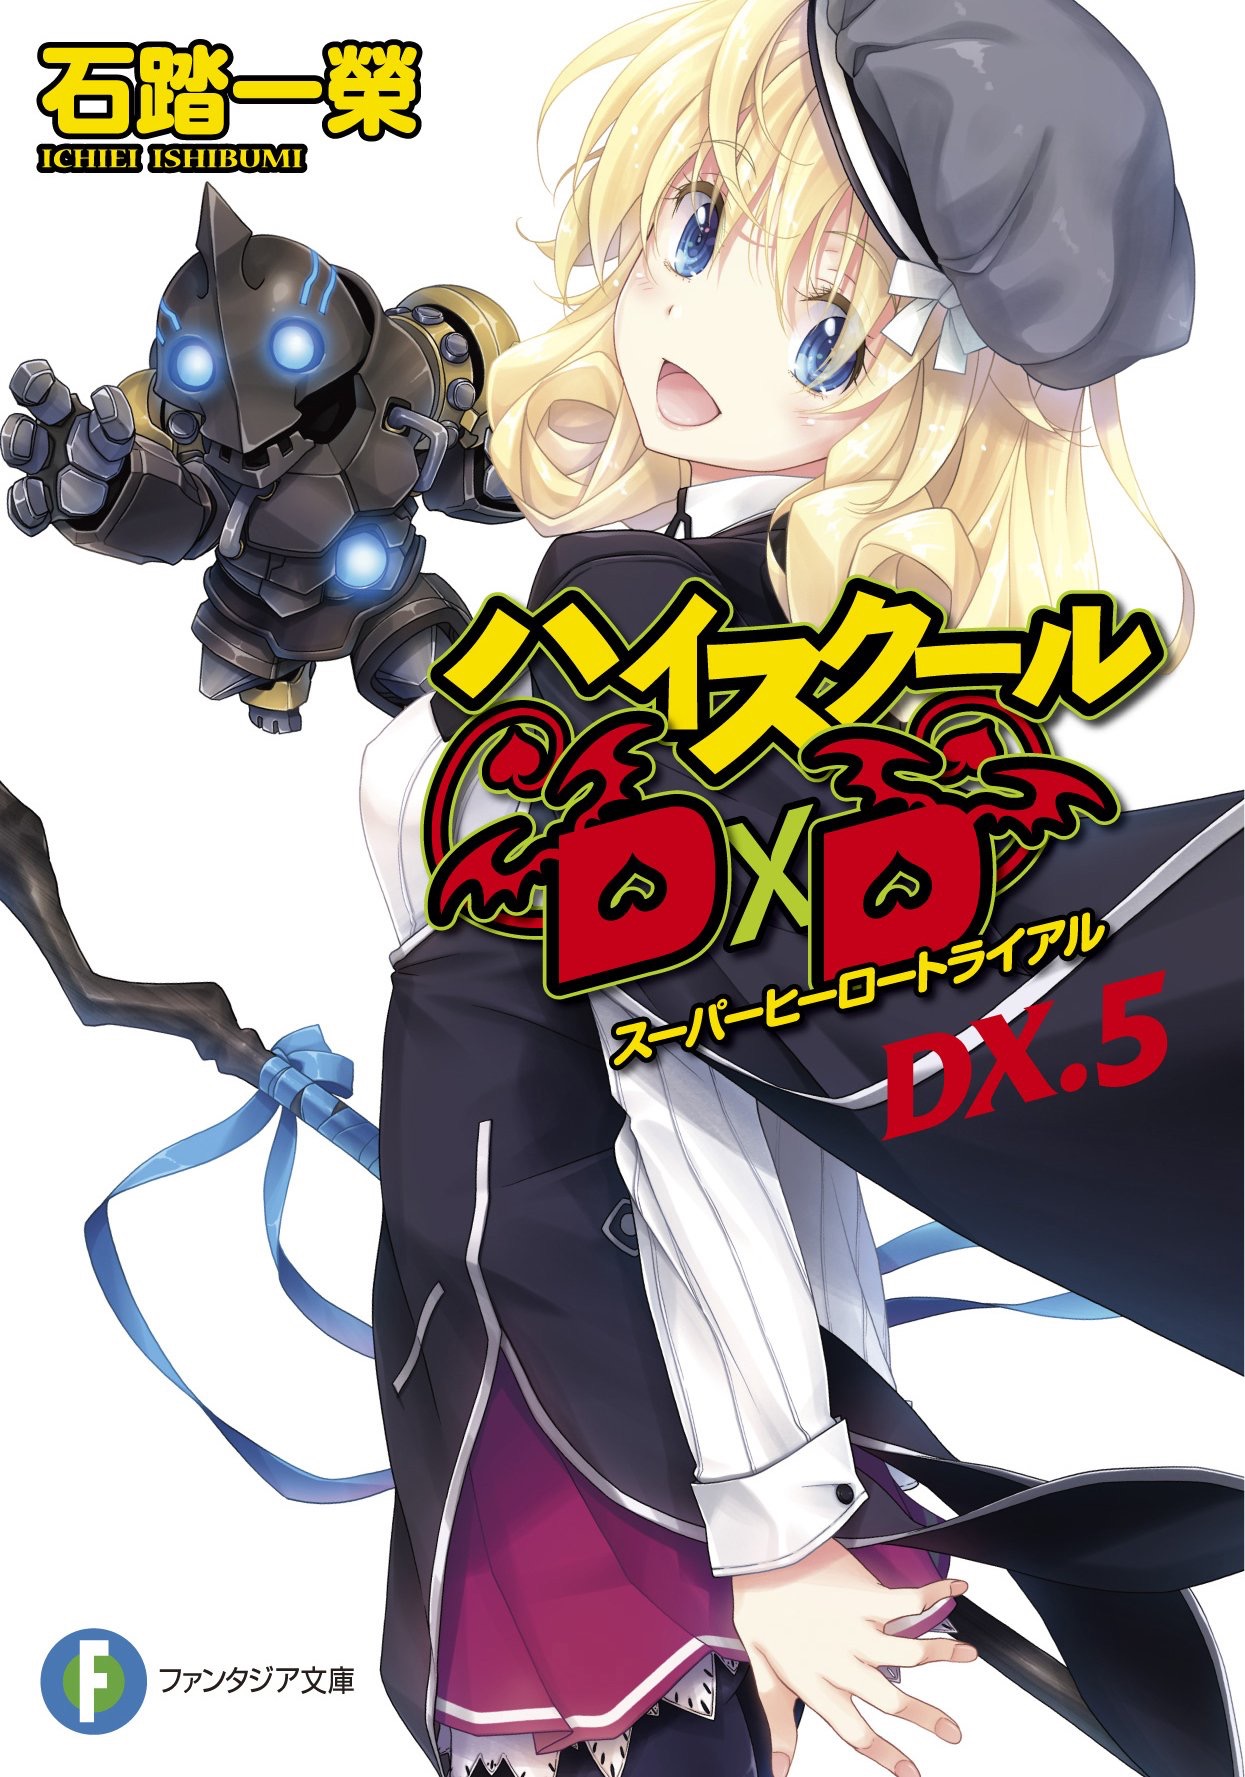 High School DxD (light novels) | High School DxD Wiki | Fandom